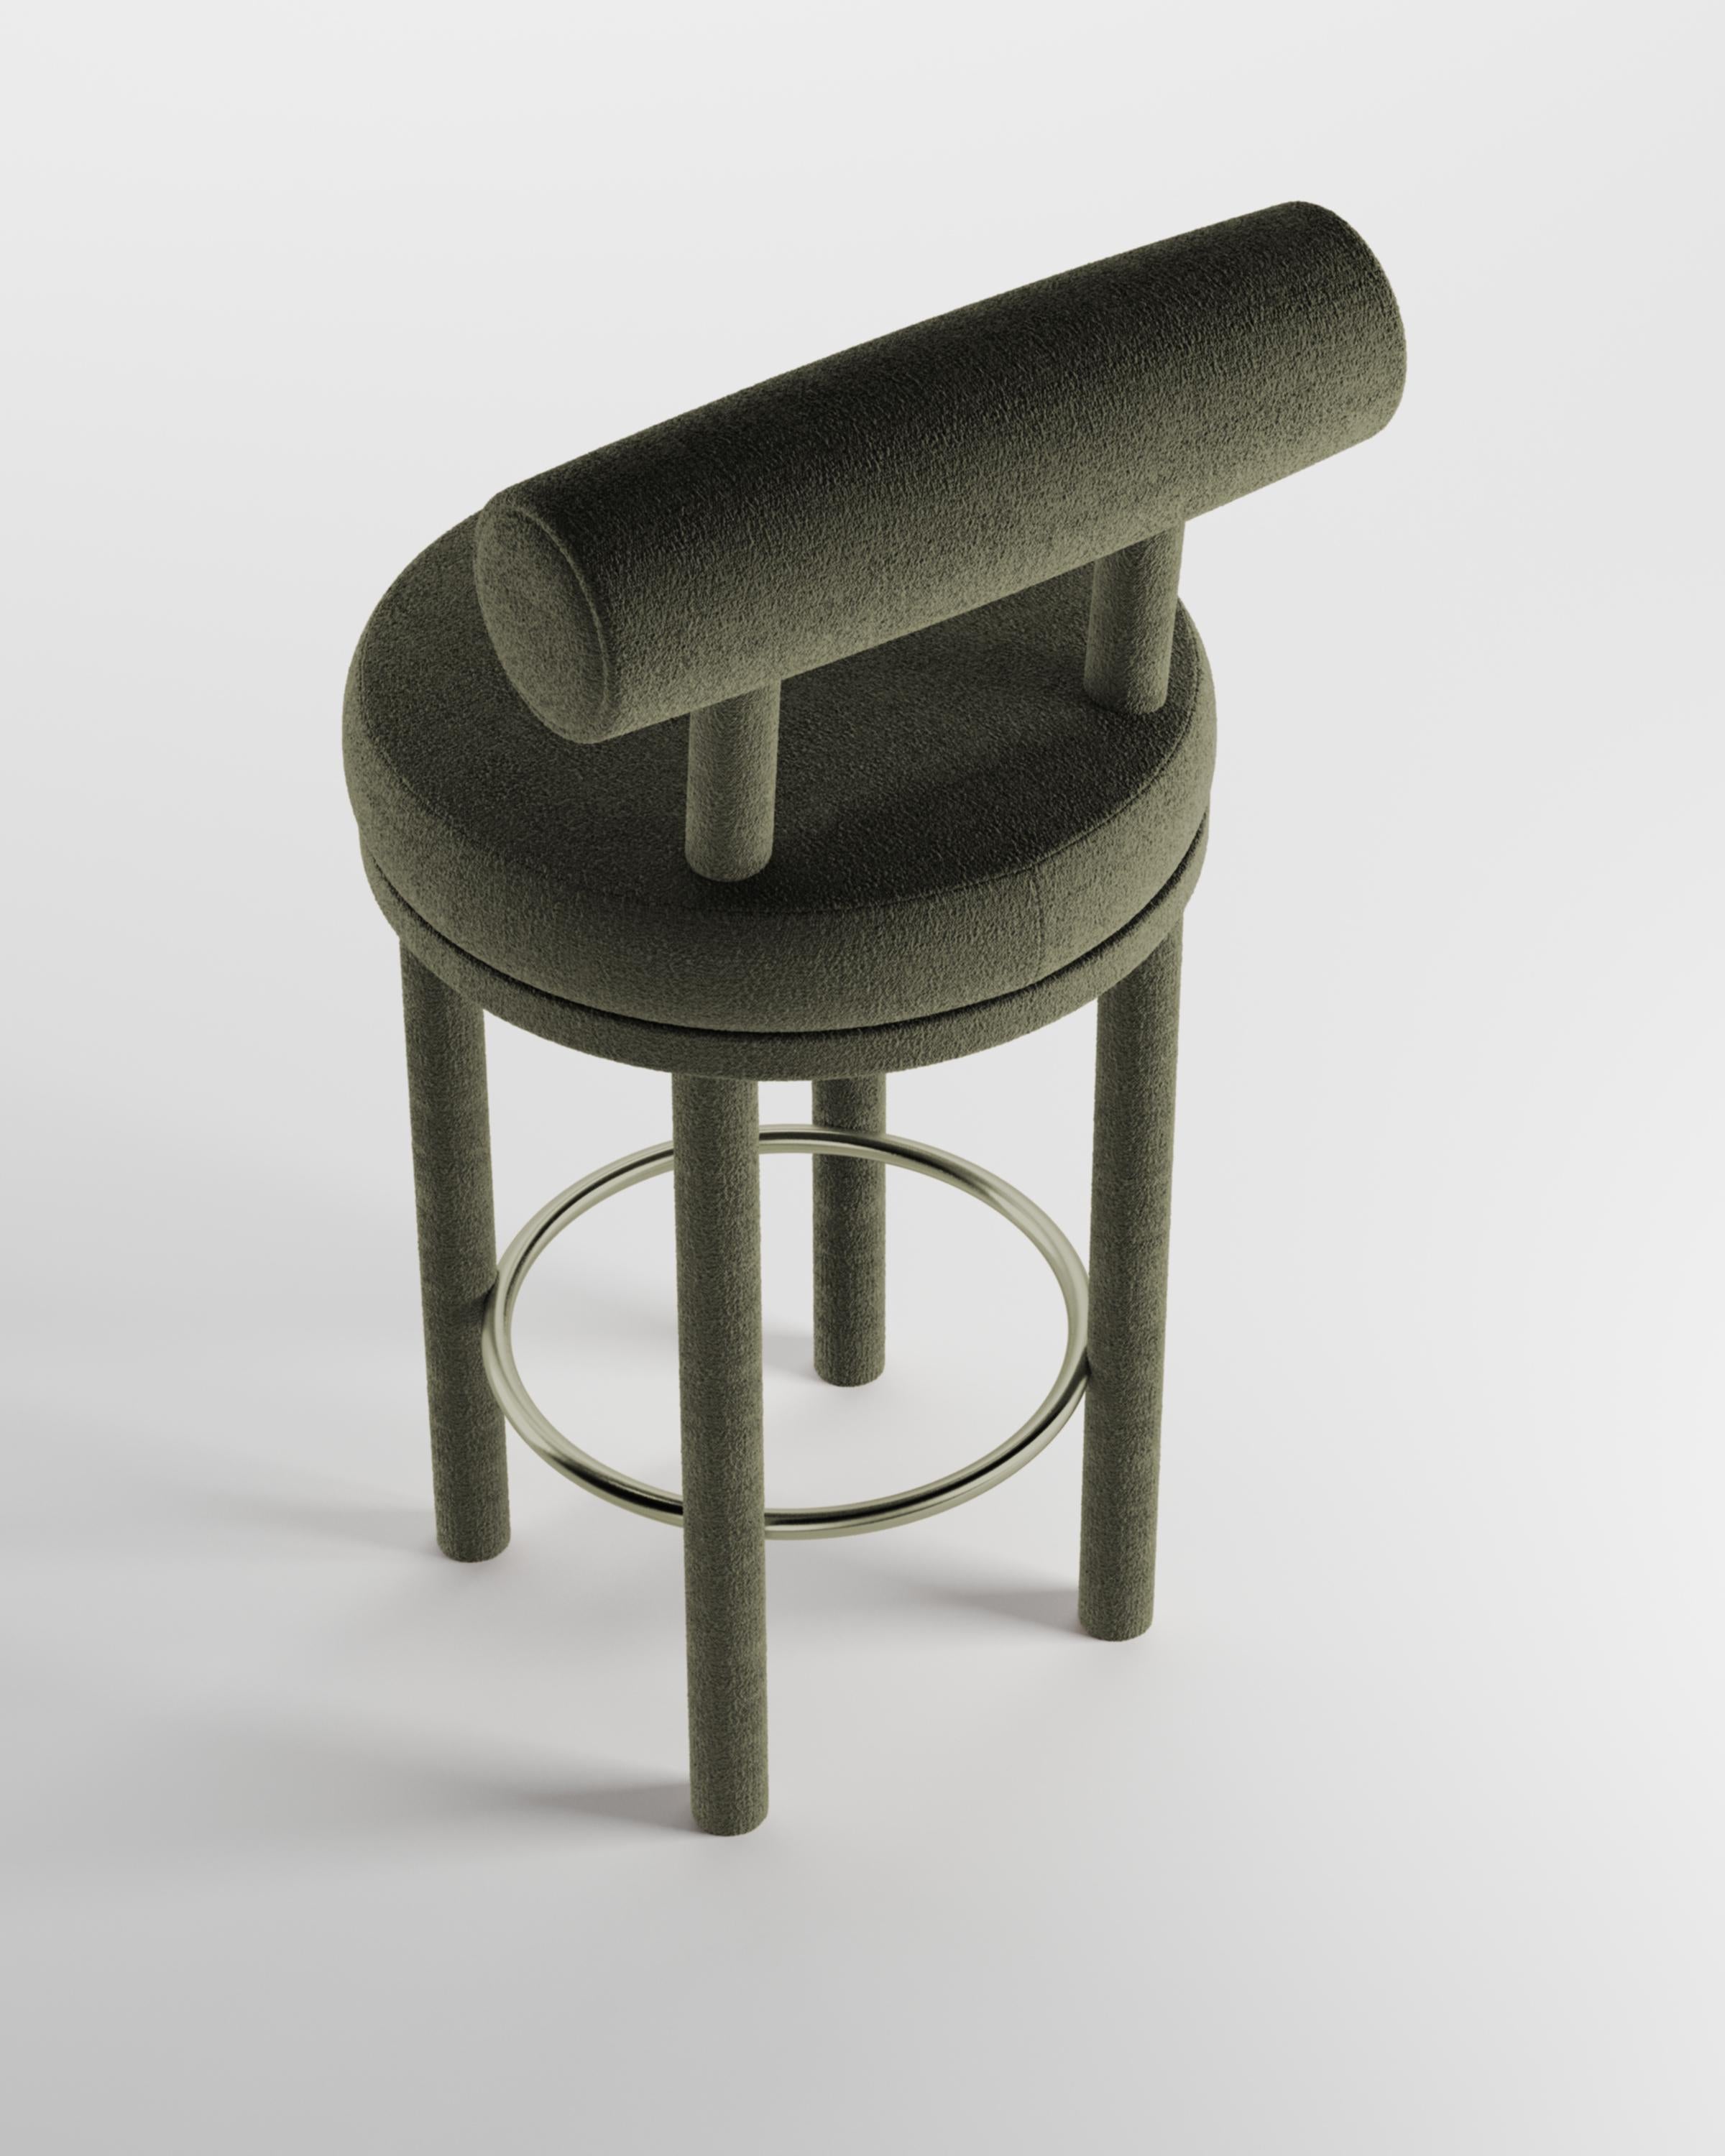 Moderner Barstuhl Moca mit Stoffbezug von Studio Rig für Collector Studio

Ein Stuhl, der sowohl moderne als auch klassische Designansätze miteinander verbindet.
Der strapazierfähige und solide Stuhl ist so konzipiert, dass er sich an den Körper